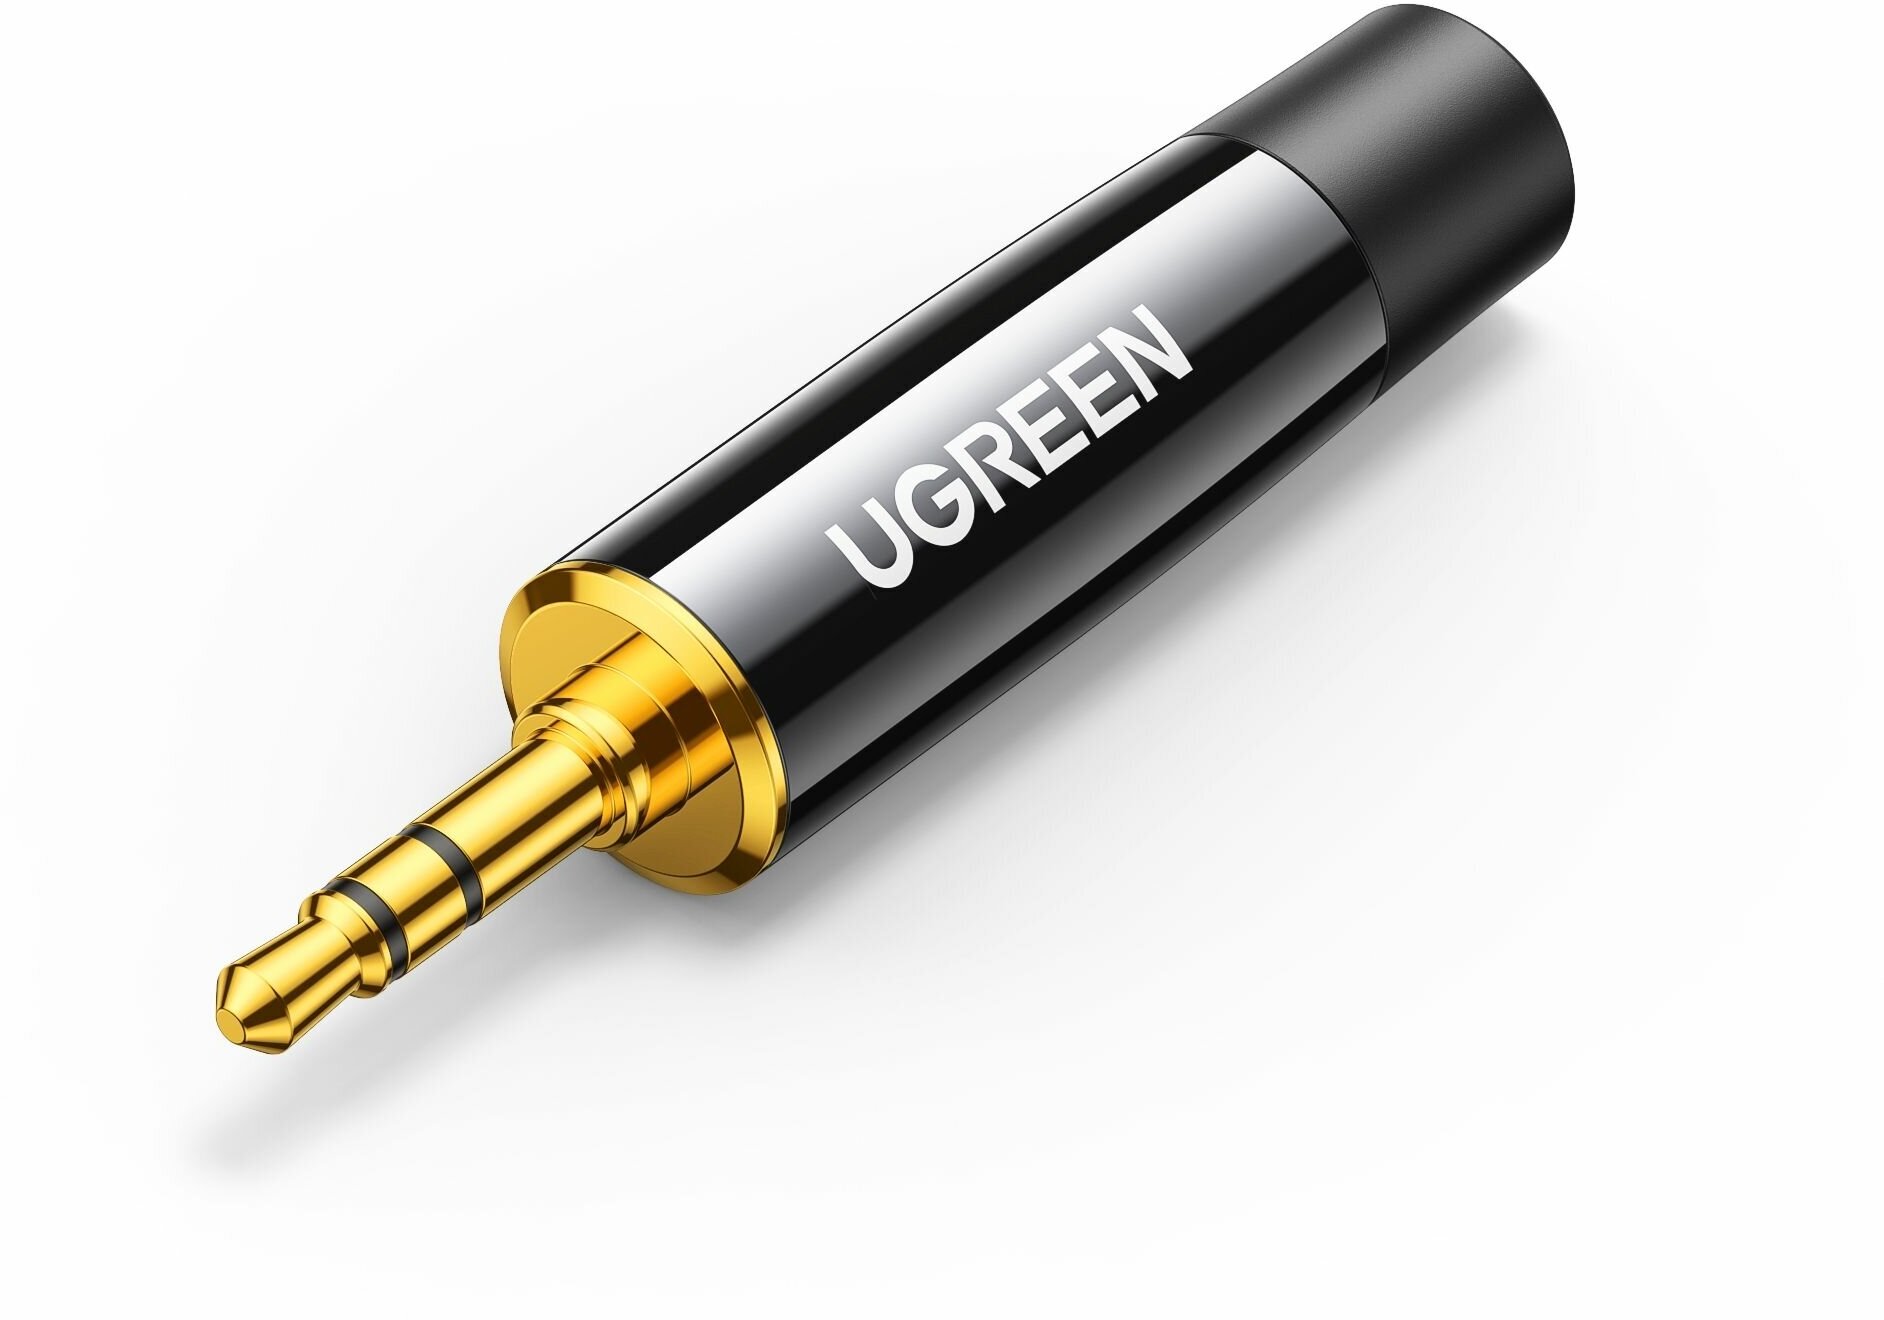 Коннектор UGREEN AV189 (20762) 3.5mm Audio Connector 4 шт в упаковке